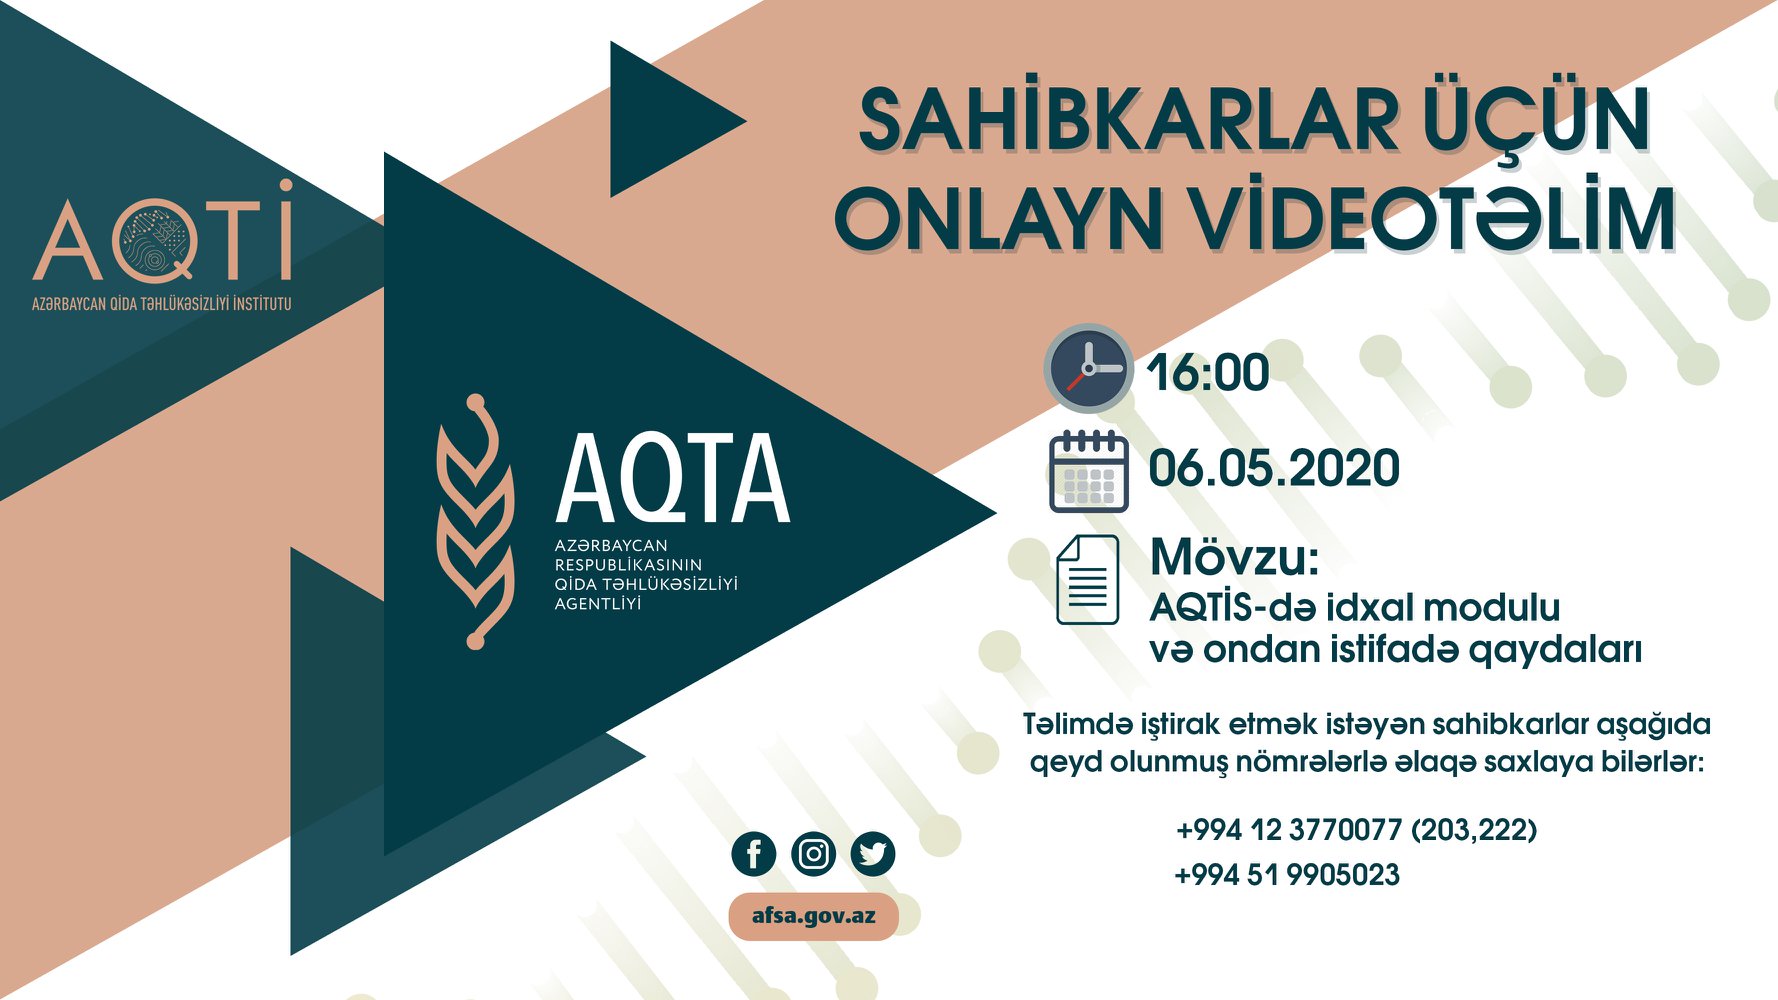 AQTA qida məhsulları idxalçılarını ödənişsiz videotəlimlərə dəvət edir